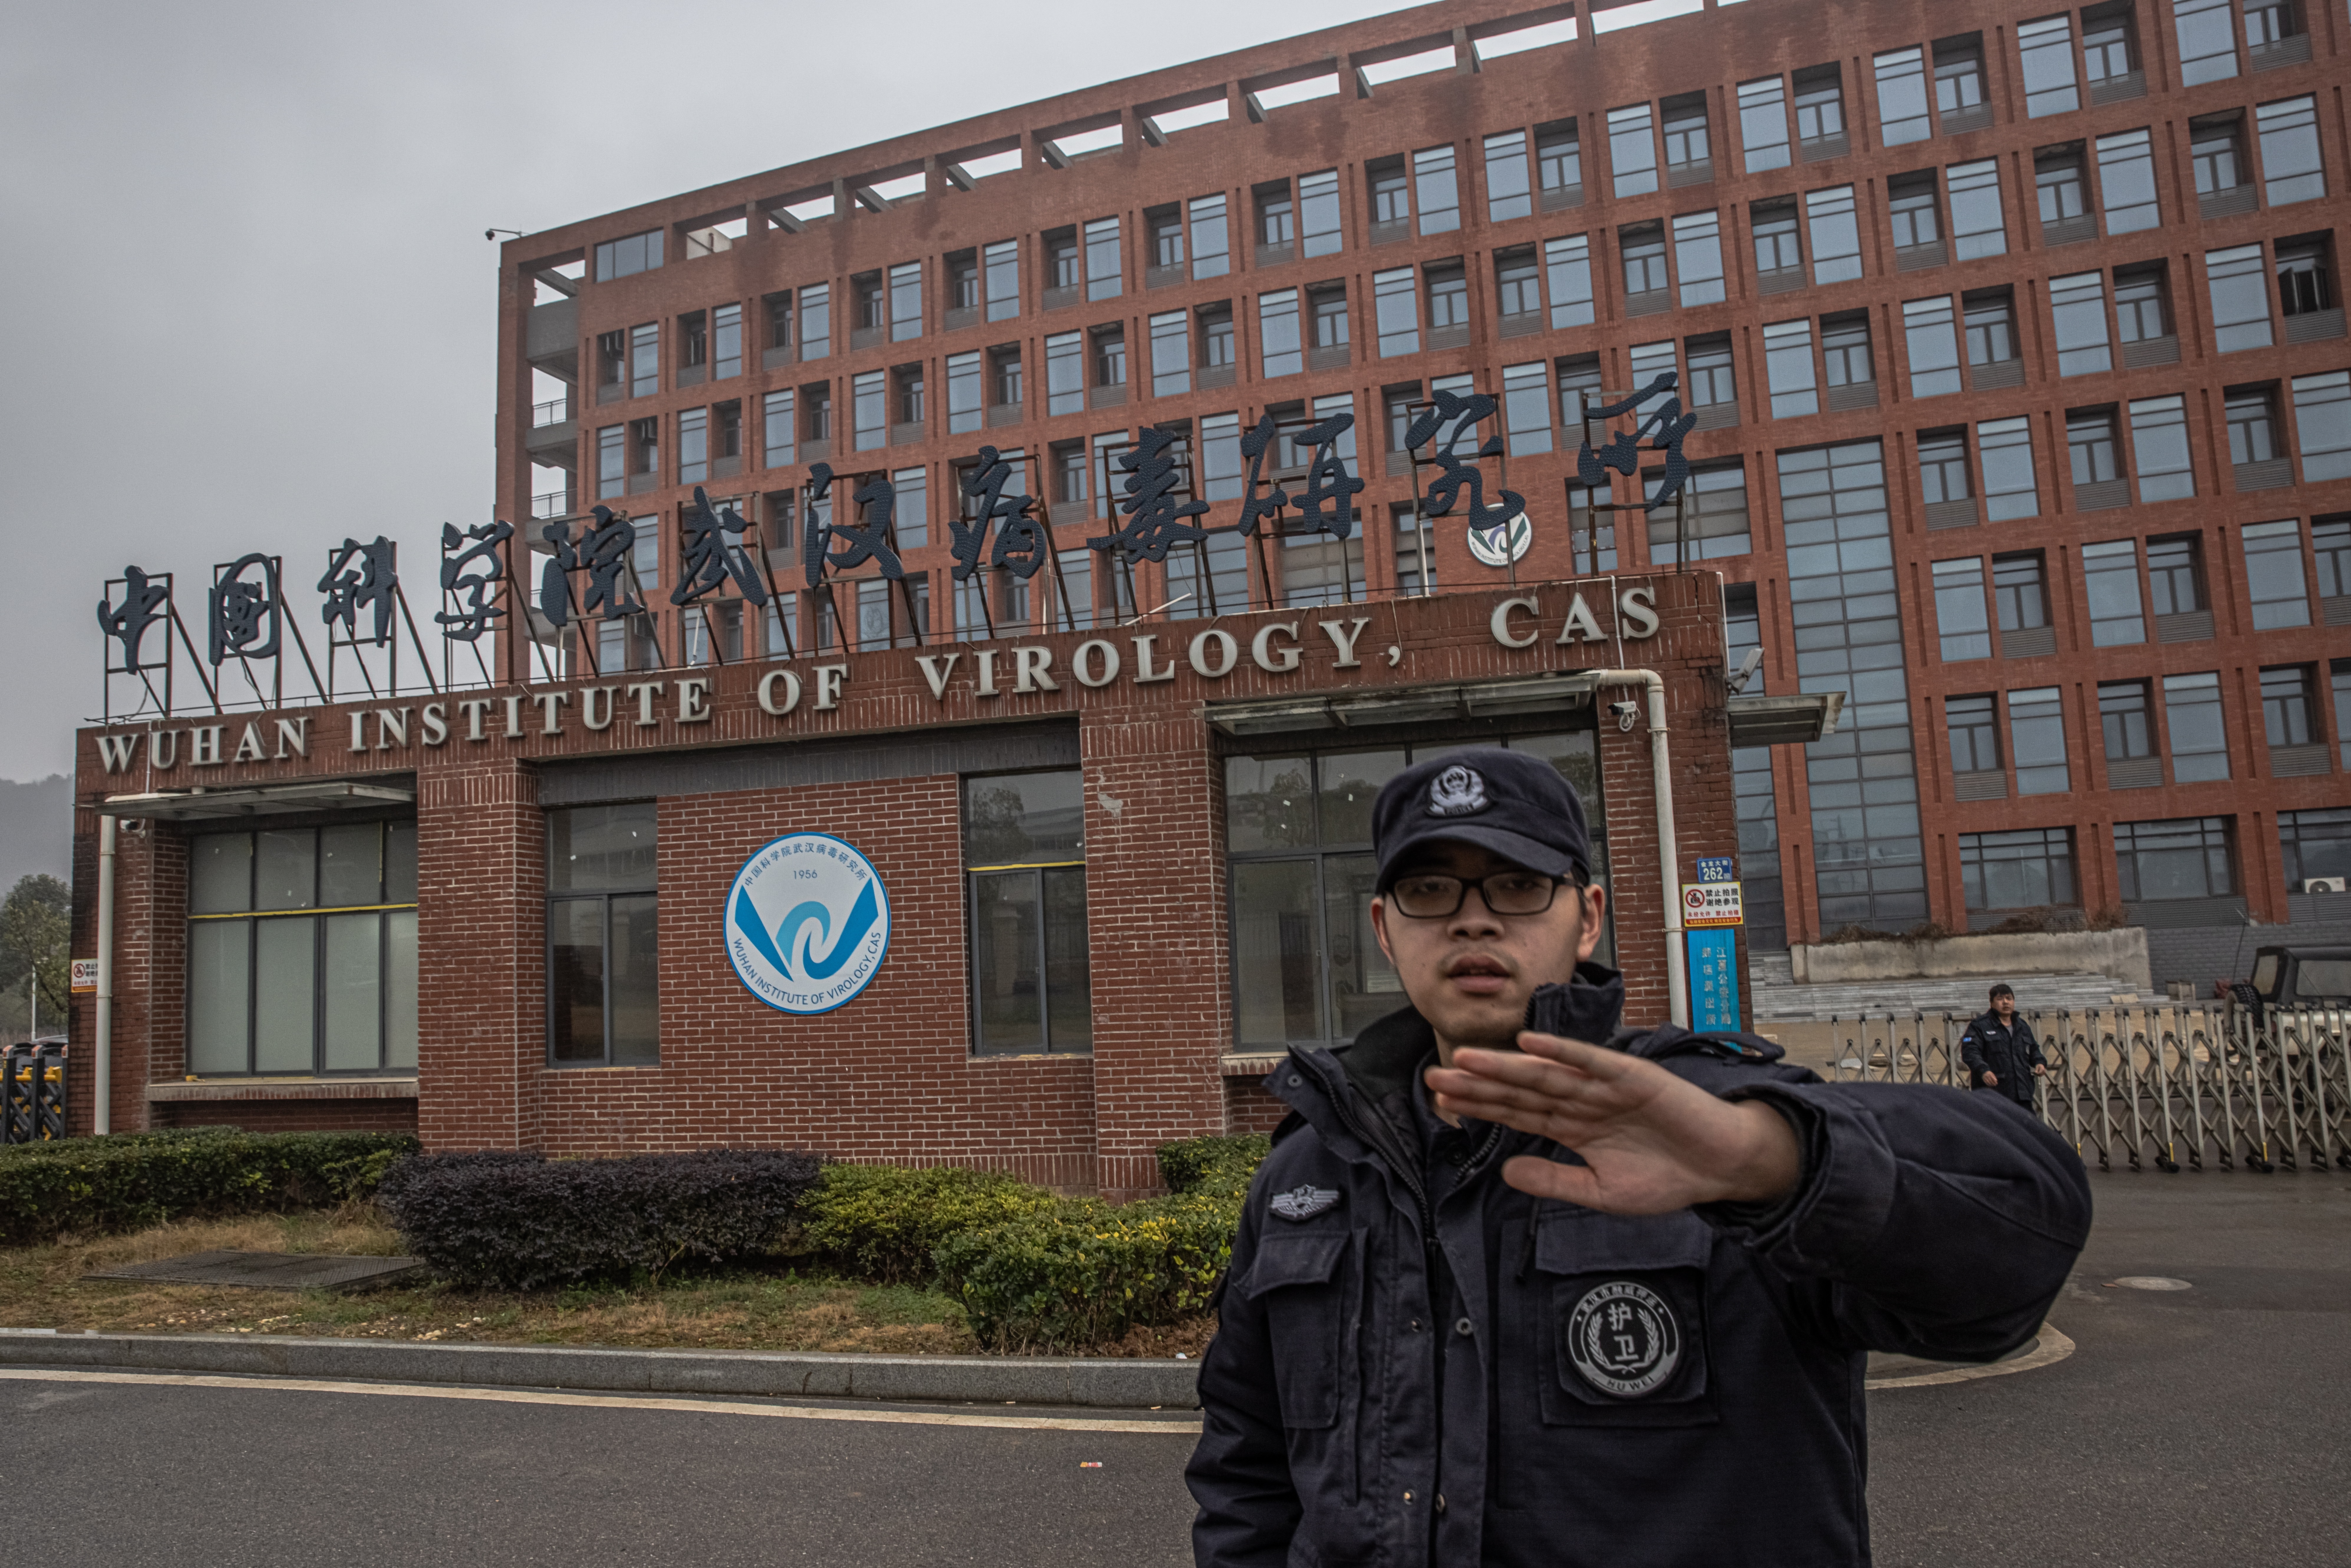 Un agente de seguridad impide tomar imágenes en el exterior del Instituto de Virología de Wuhan, China. EFE/EPA/ROMAN PILIPEY
